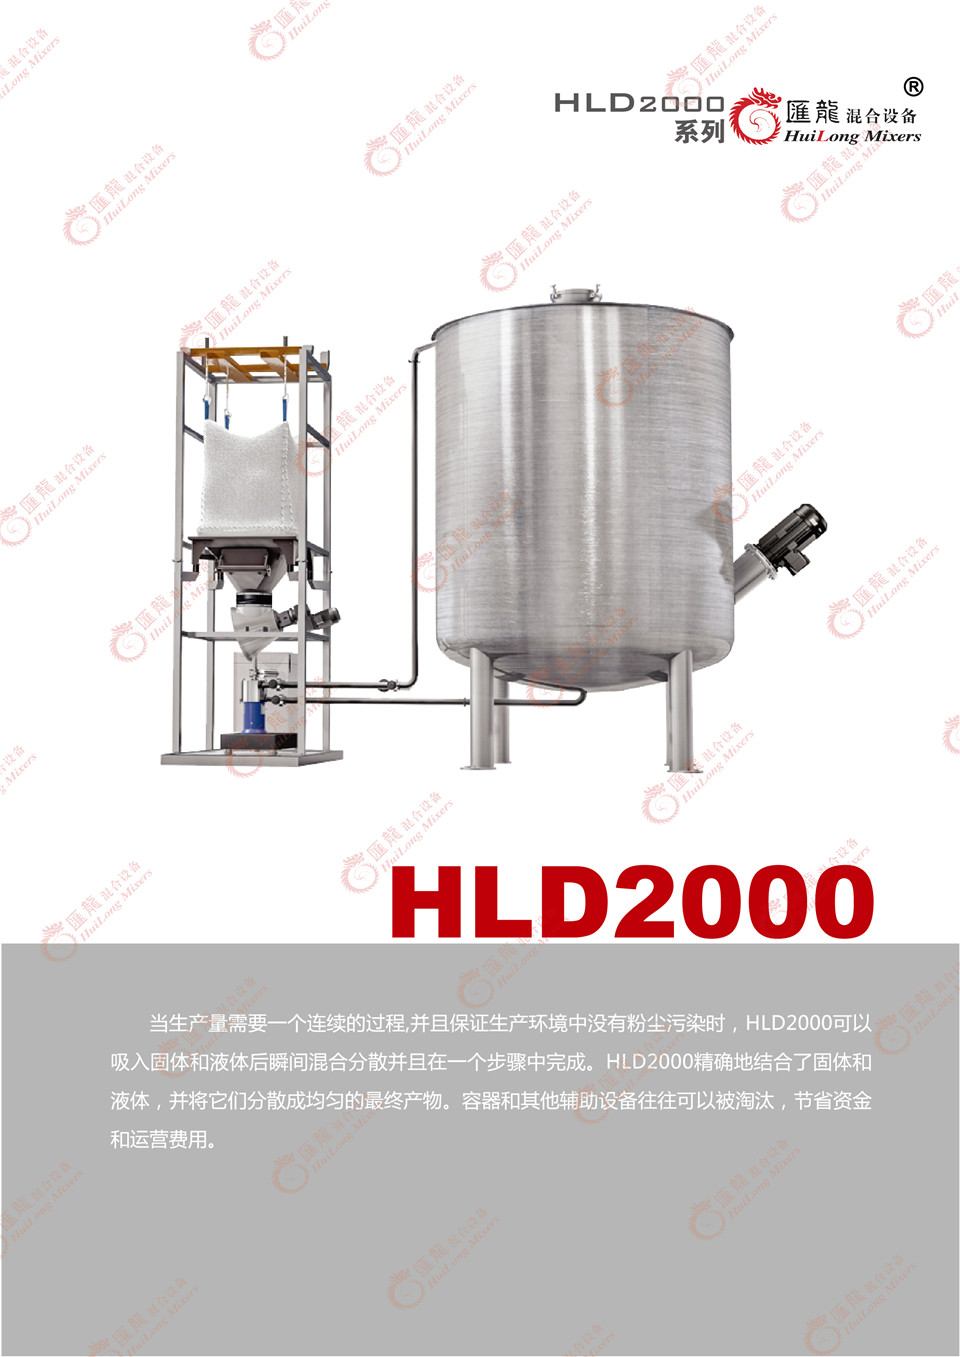 “HLD2000-普通型乳化机”/